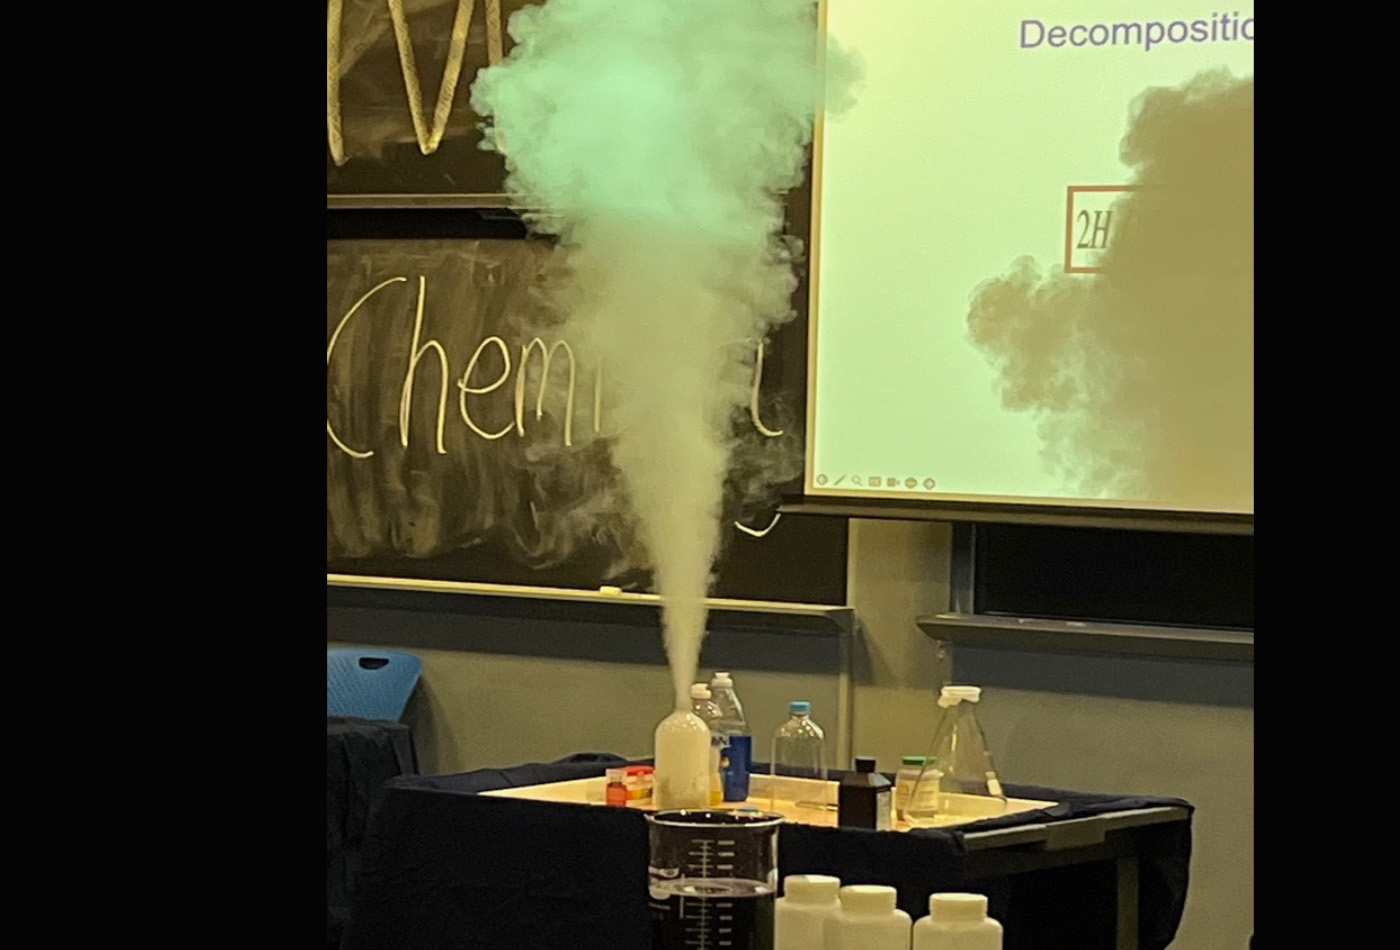 A beaker emits steam.